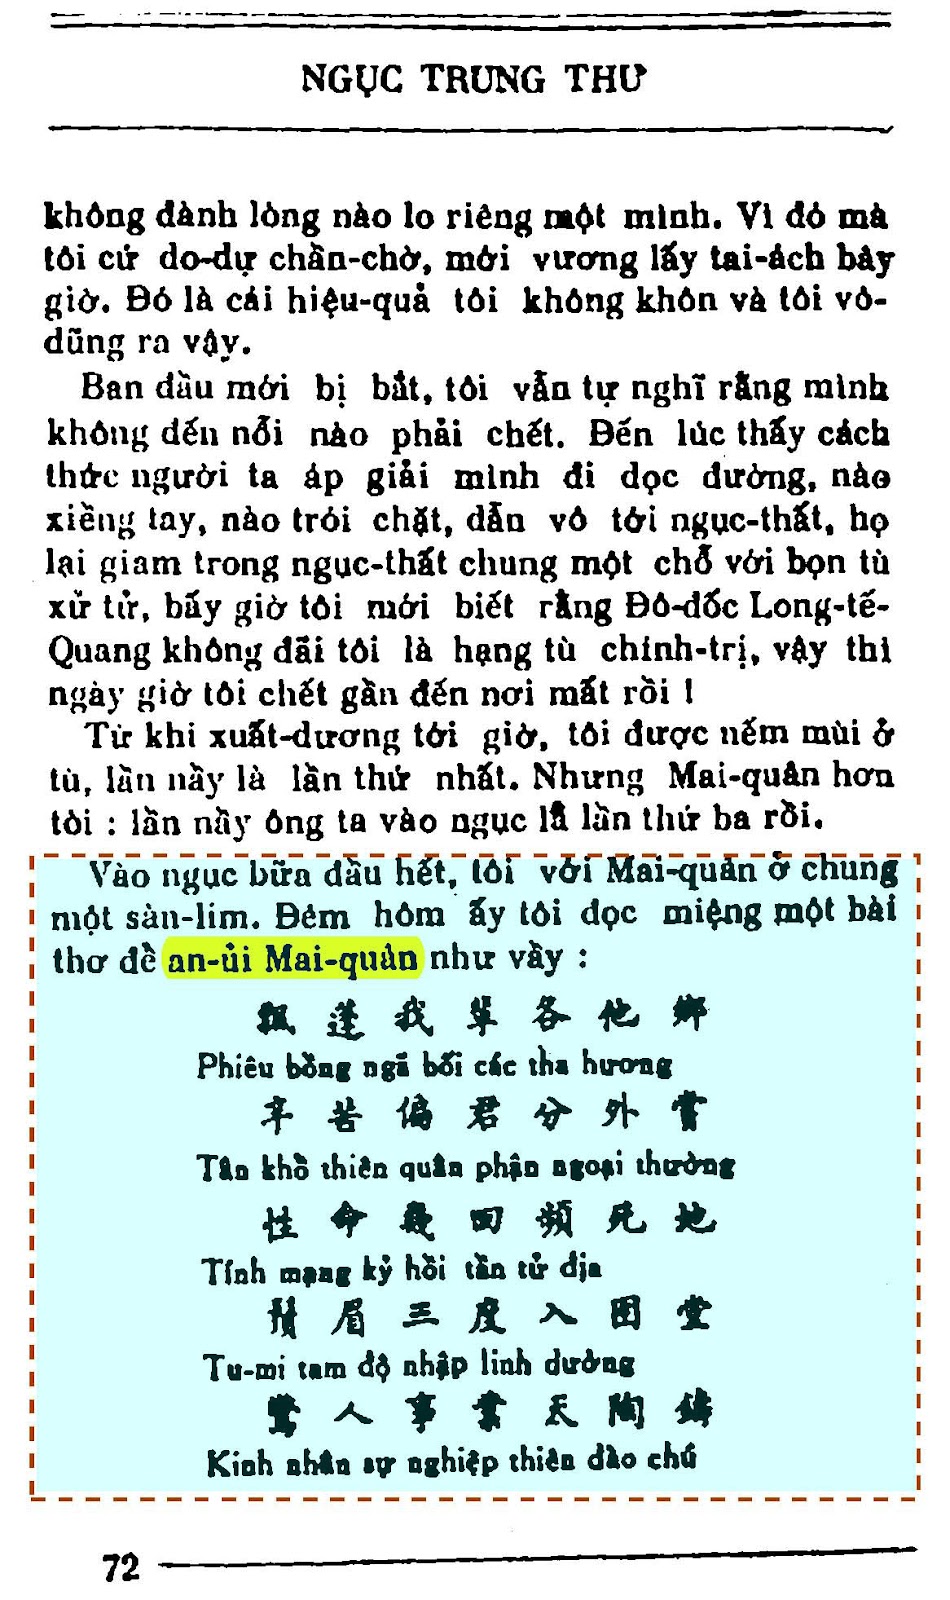 Trang 72 Ngục trung thư - Tân Việt.jpg